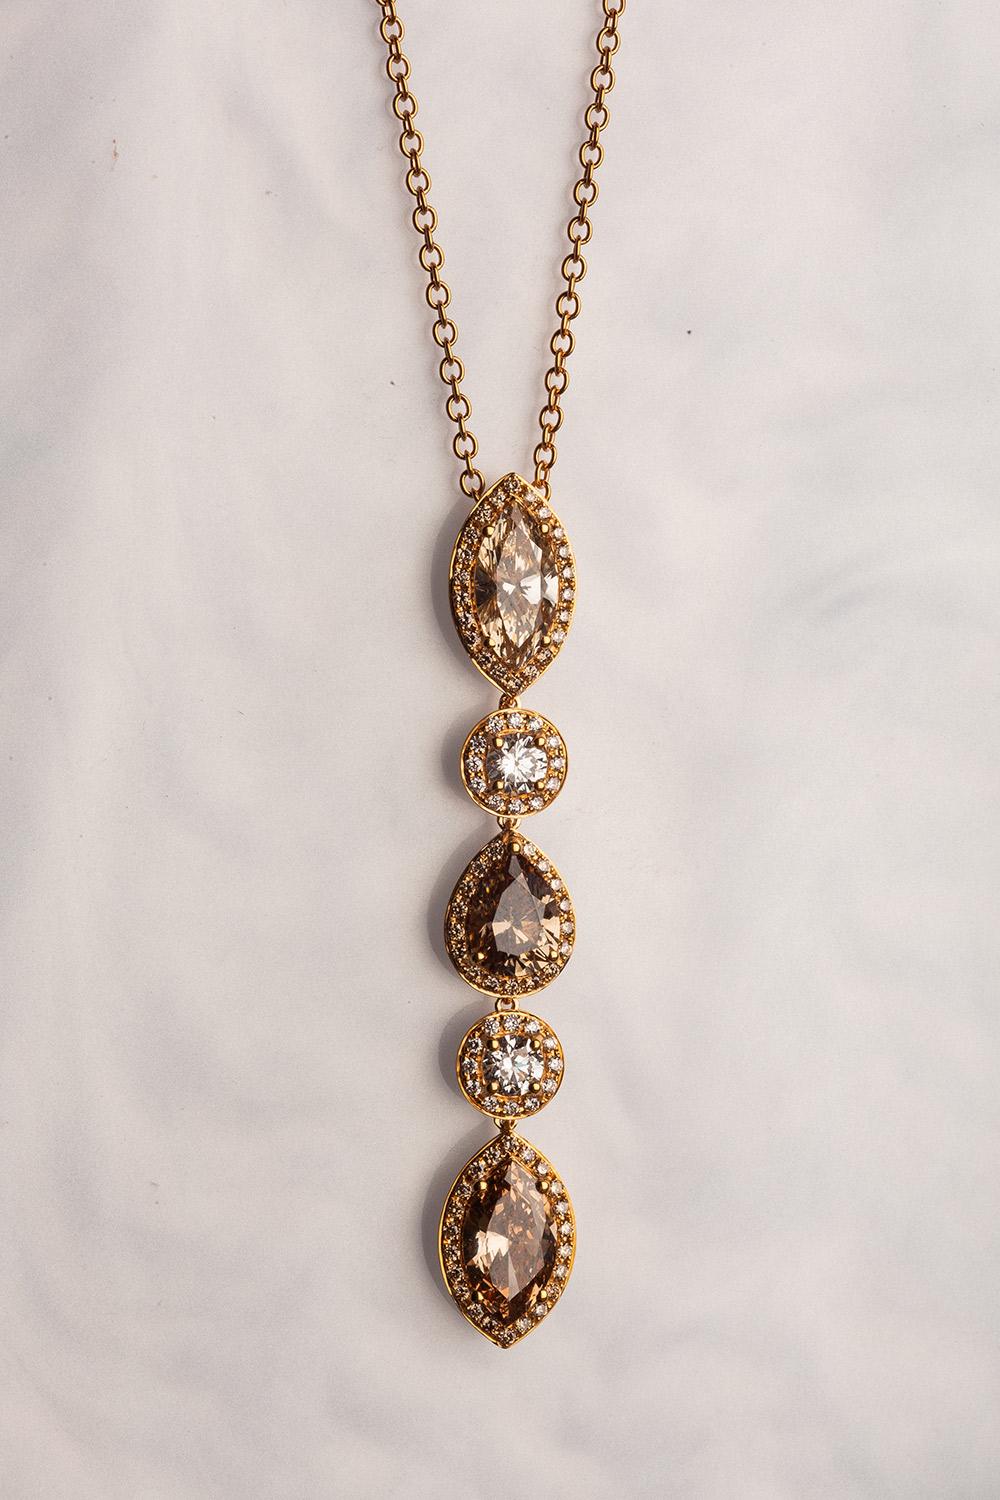 Dieser elegante Anhänger aus 18 Karat Gelbgold ist aus unserer Divine Collection. Es besteht aus 2 marquise Form braunen Diamanten in insgesamt 2,04 Karat, Birne Form braunen Diamanten in insgesamt 1,04 Karat und 2 runden farblosen Diamanten in